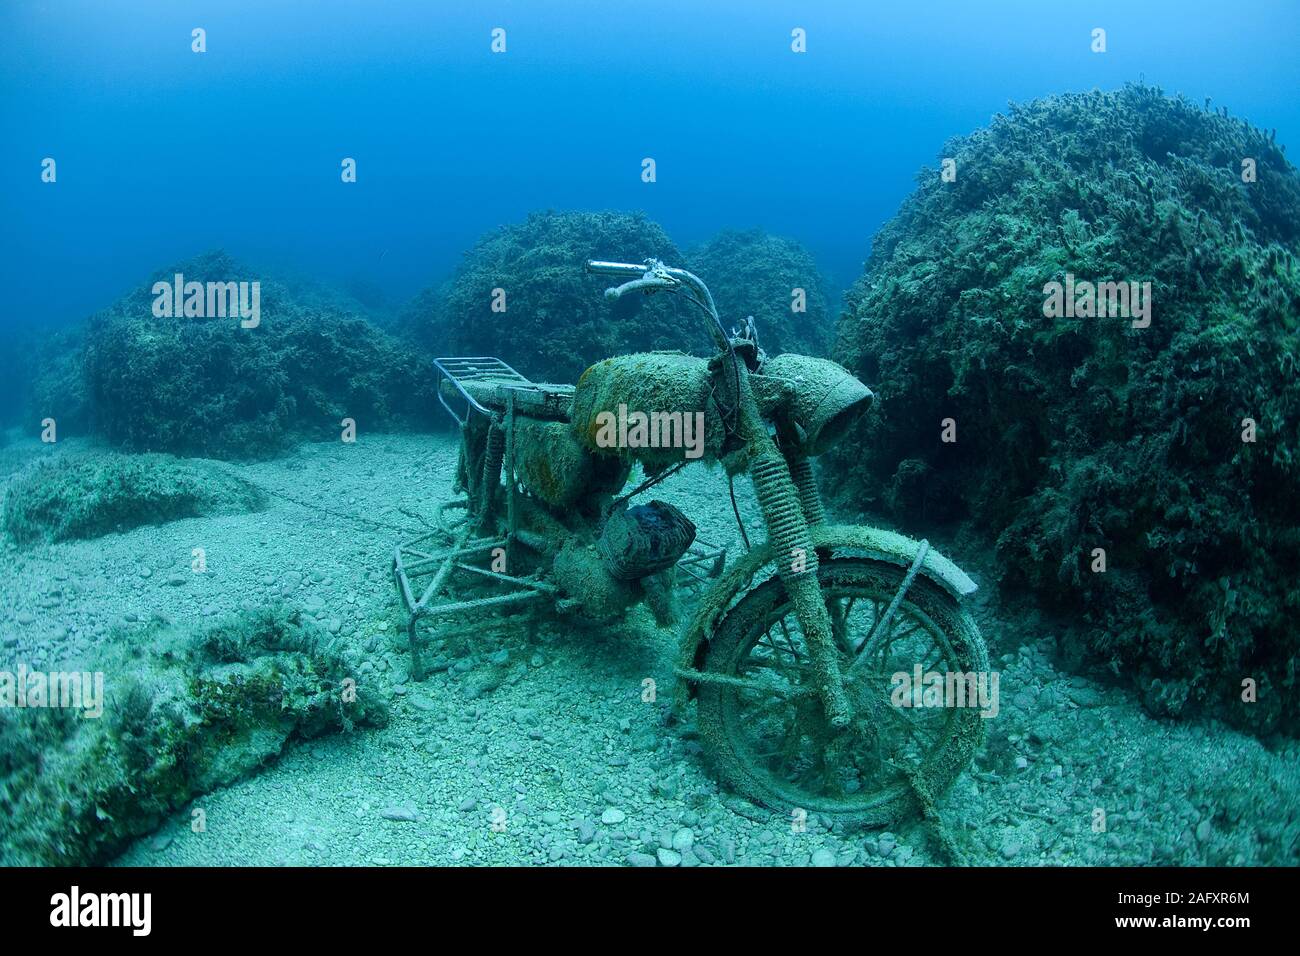 Versunkenes Motorrad auf dem Meeresgrund, Zakynthos, Griechenland | versunkene Motorrad stehend am Meeresboden, Zakynthos Insel, Griechenland Stockfoto